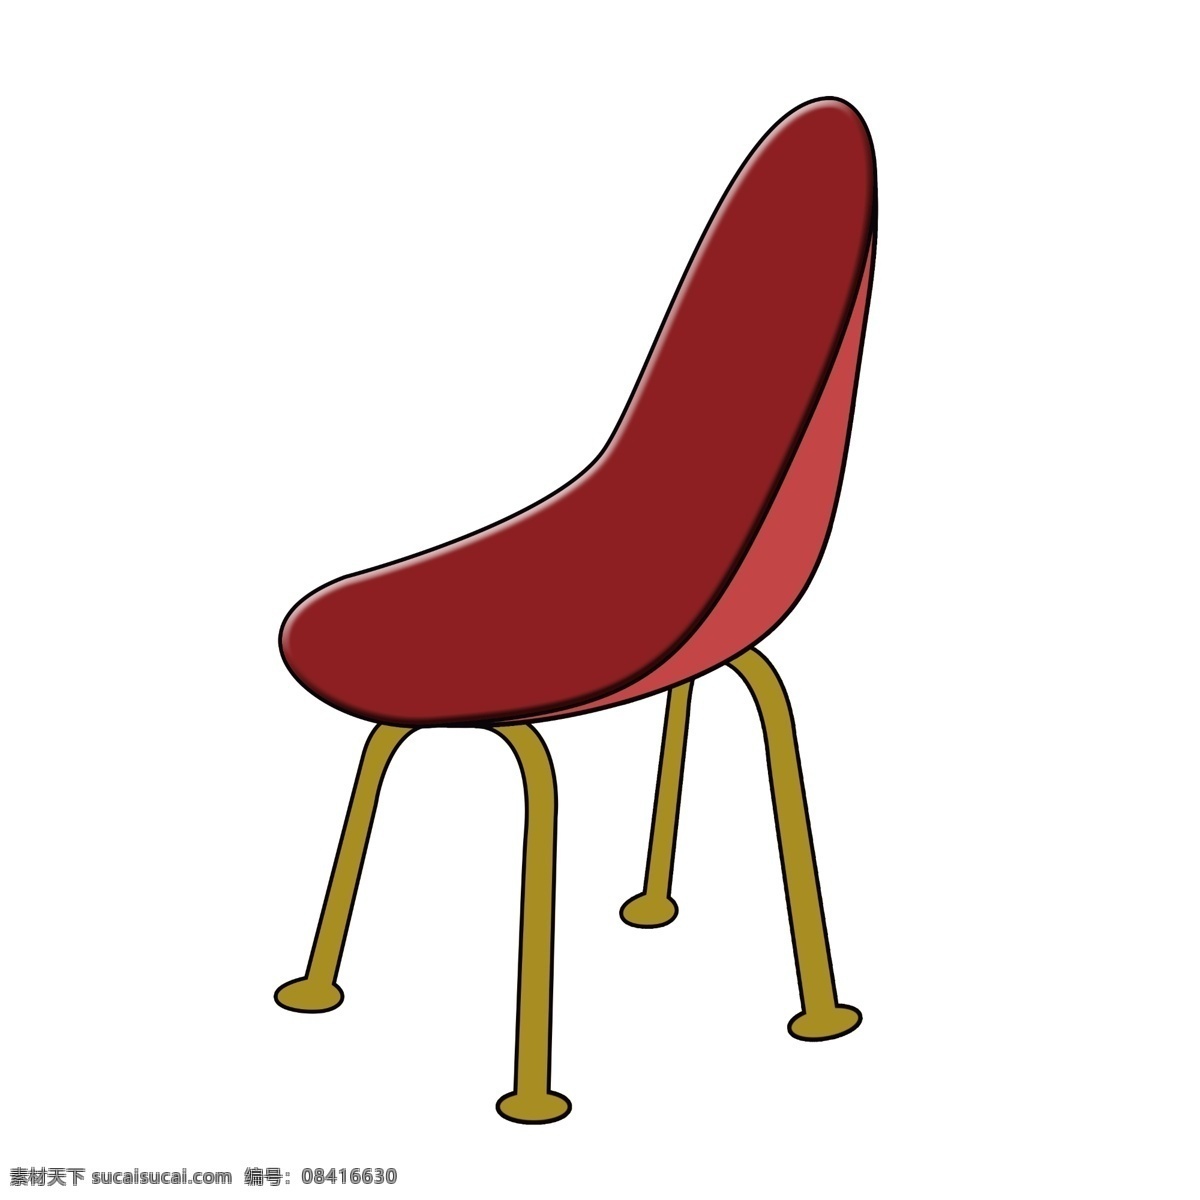 红色 简约 椅子 插画 一把椅子 卡通椅子 家具椅子 椅子插图 红色简约椅子 办公椅子 装修